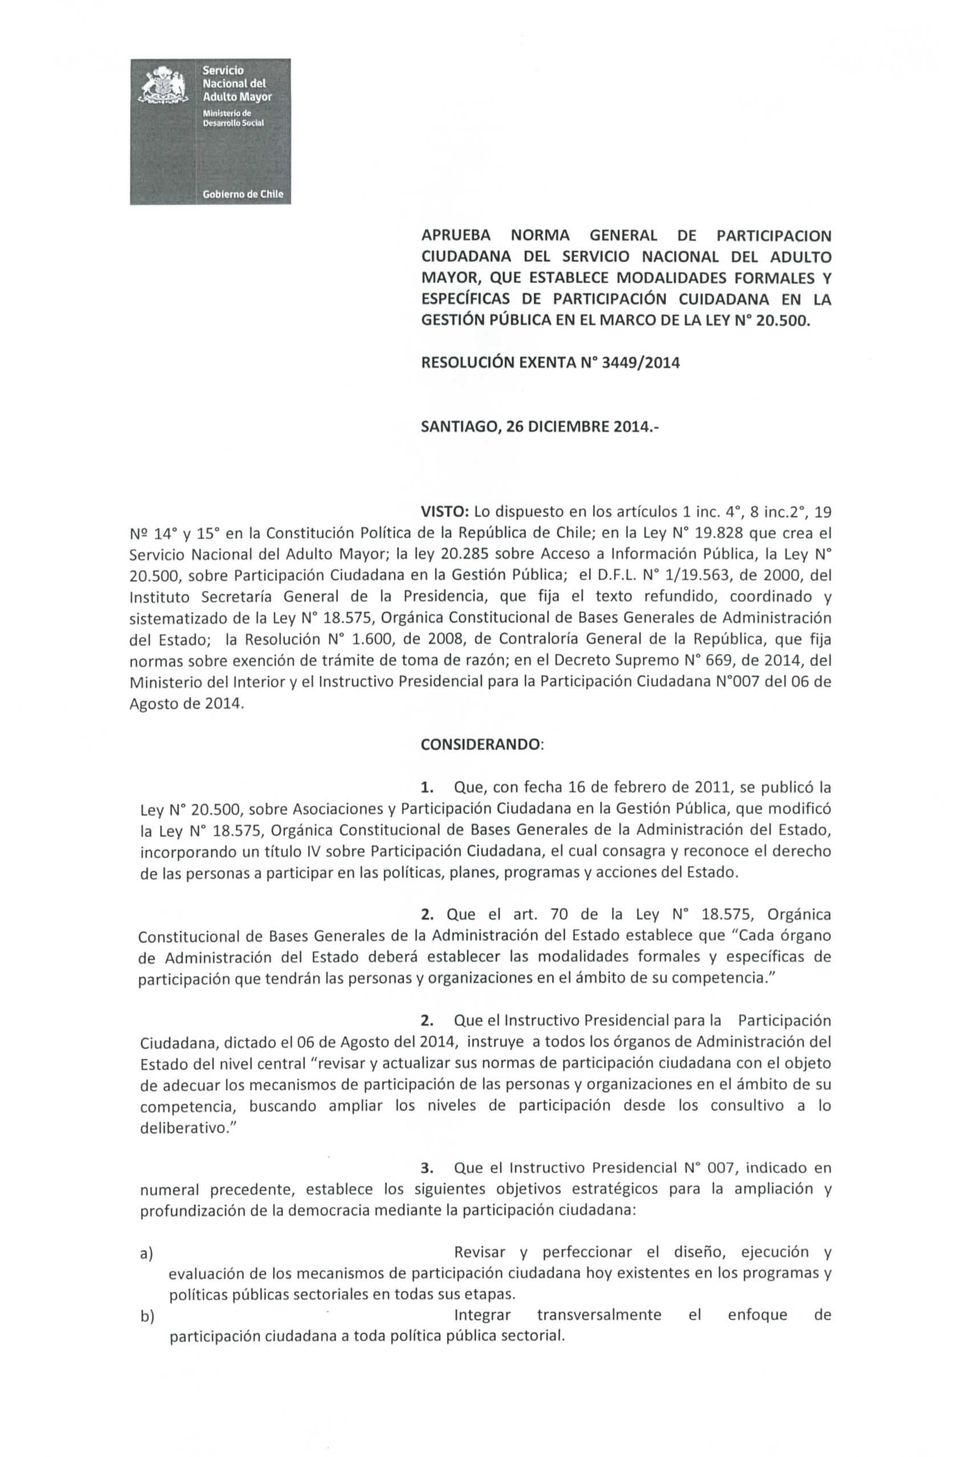 - VISTO: Lo dispuesto en los artículos 1 nc. 4, 8 inc.2, 19 NS 14 y 15 en la Constitución Política de la República de Chile; en la Ley N 19.